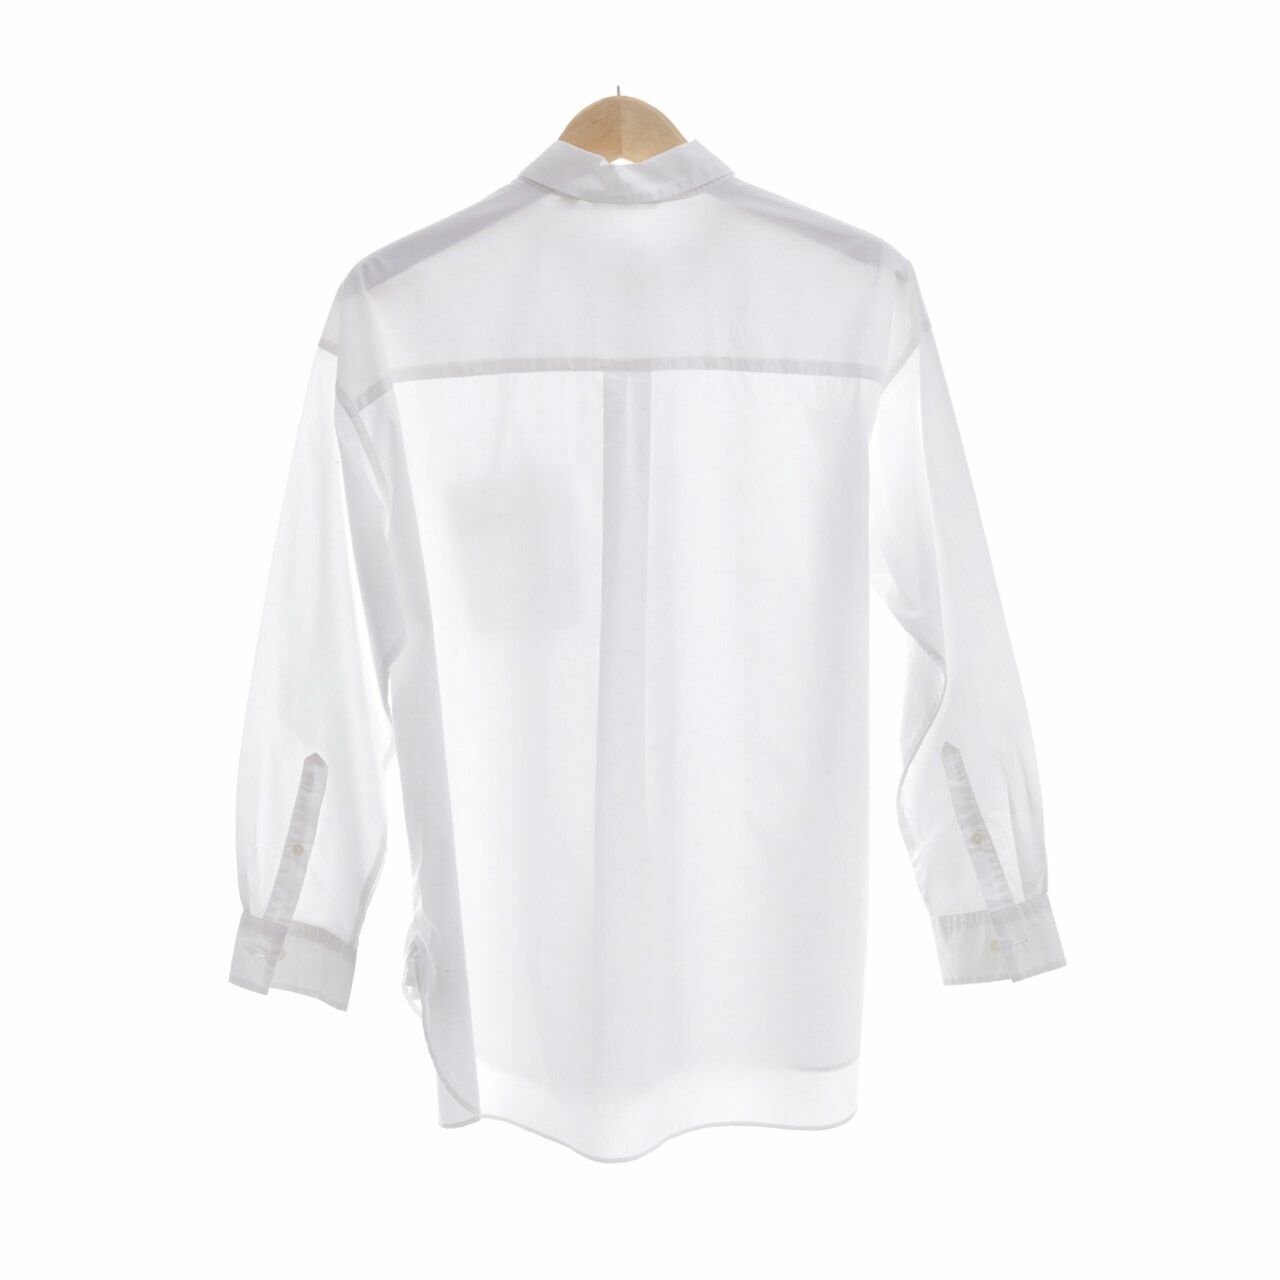 UNIQLO White Shirt